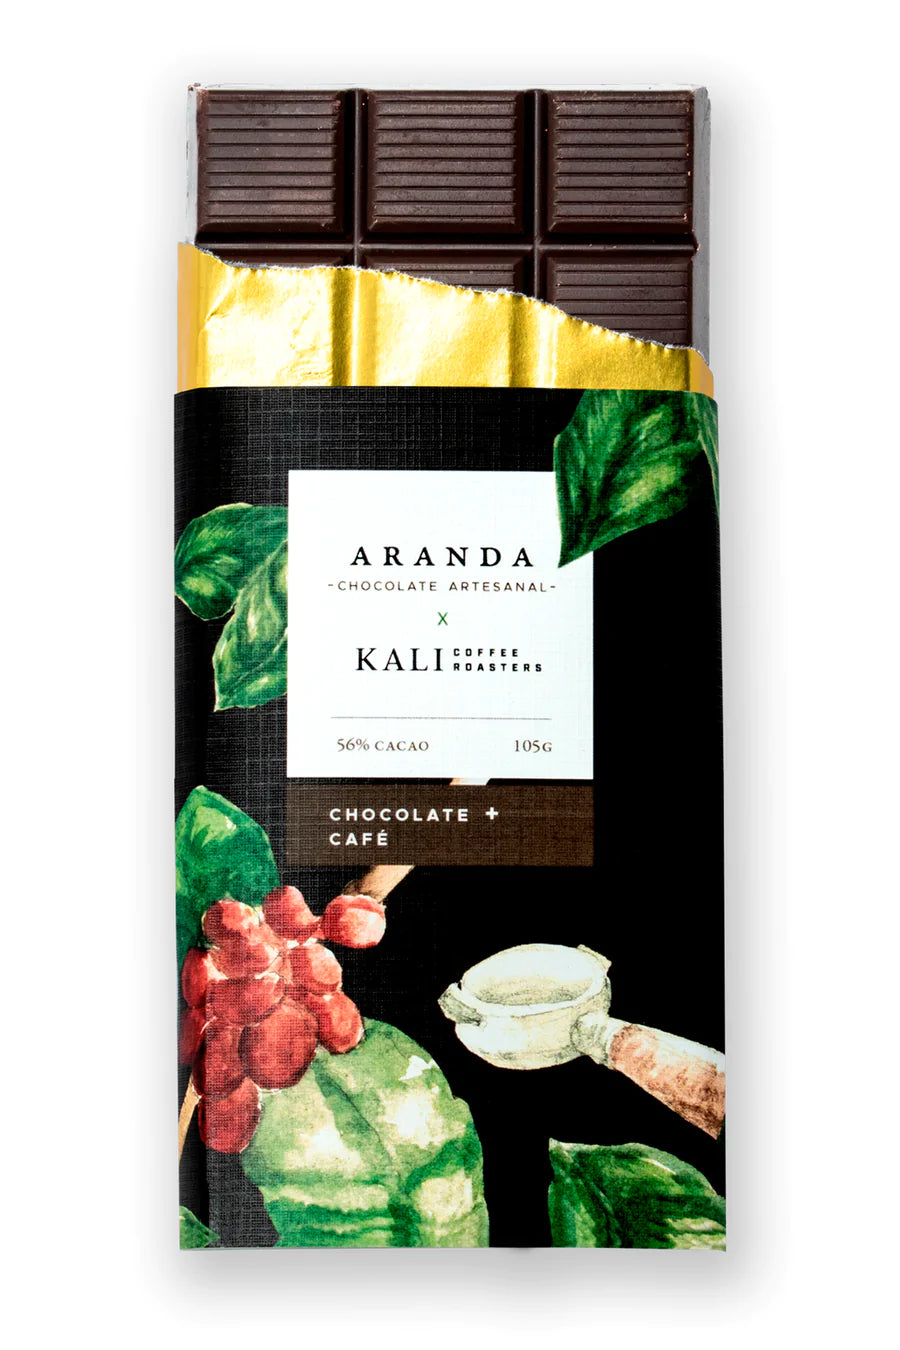 Chocolate con 56% Cacao + Café KALI ARANDA